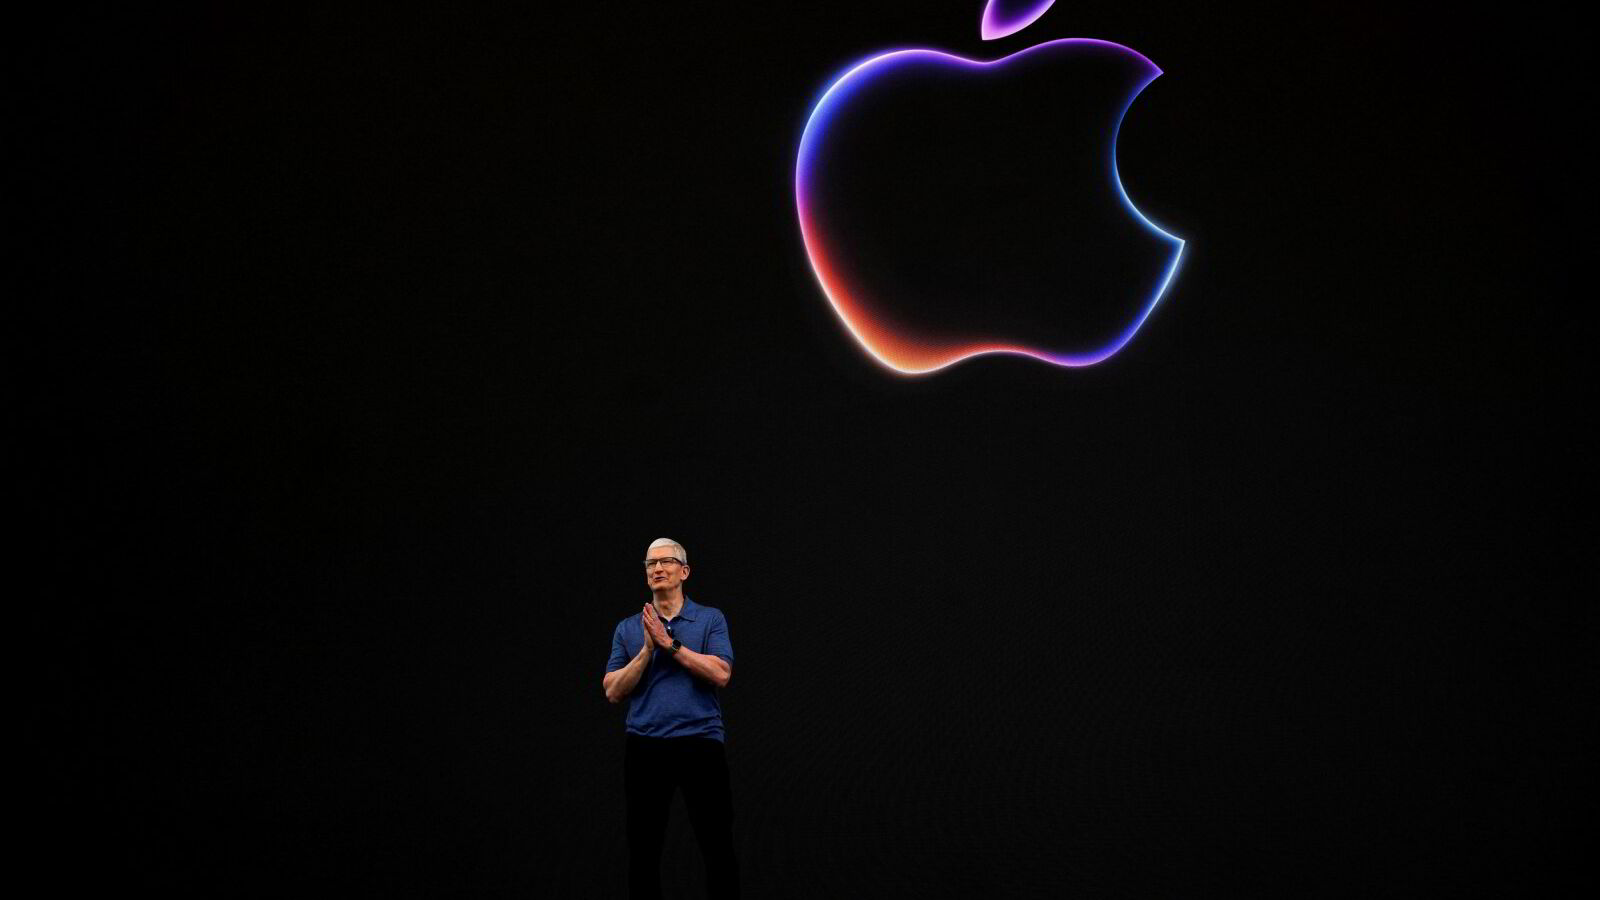 Ny kursrekord for Apple etter KI-kunngjøring: – Vil integrere KI i hverdagslivet